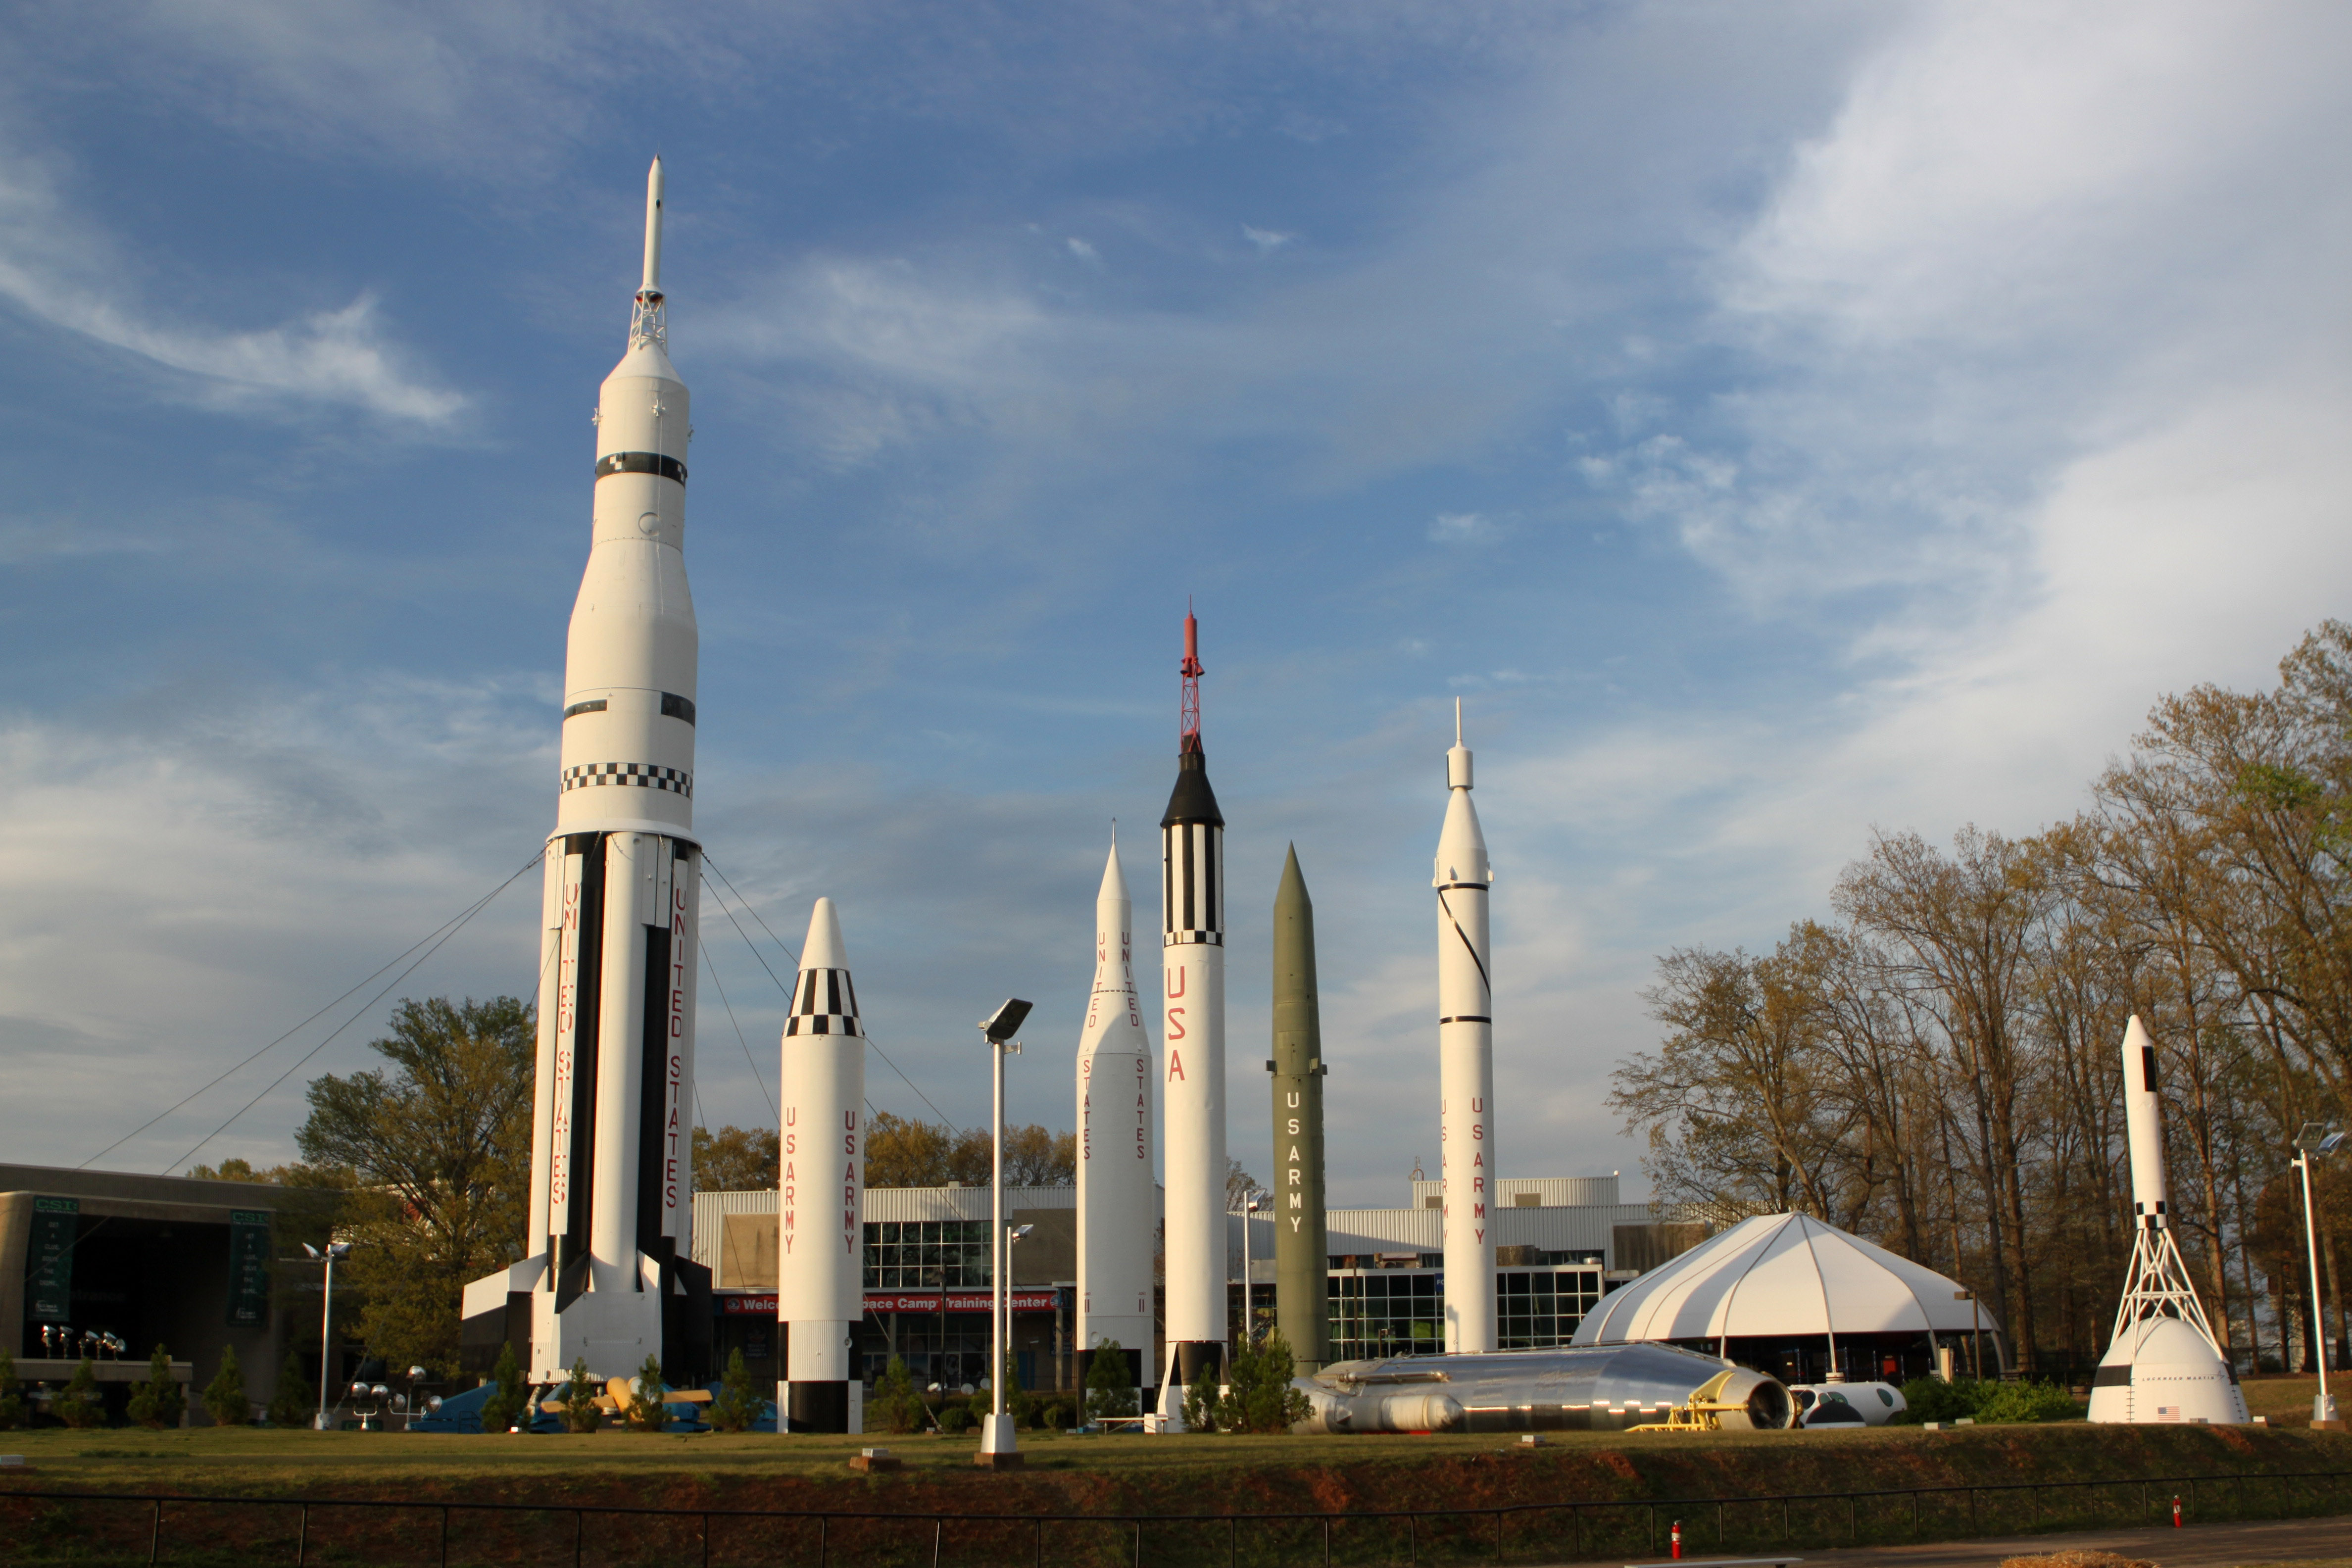 Historic Rockets At The Nasa Park In Huntsville Alabama Image Free